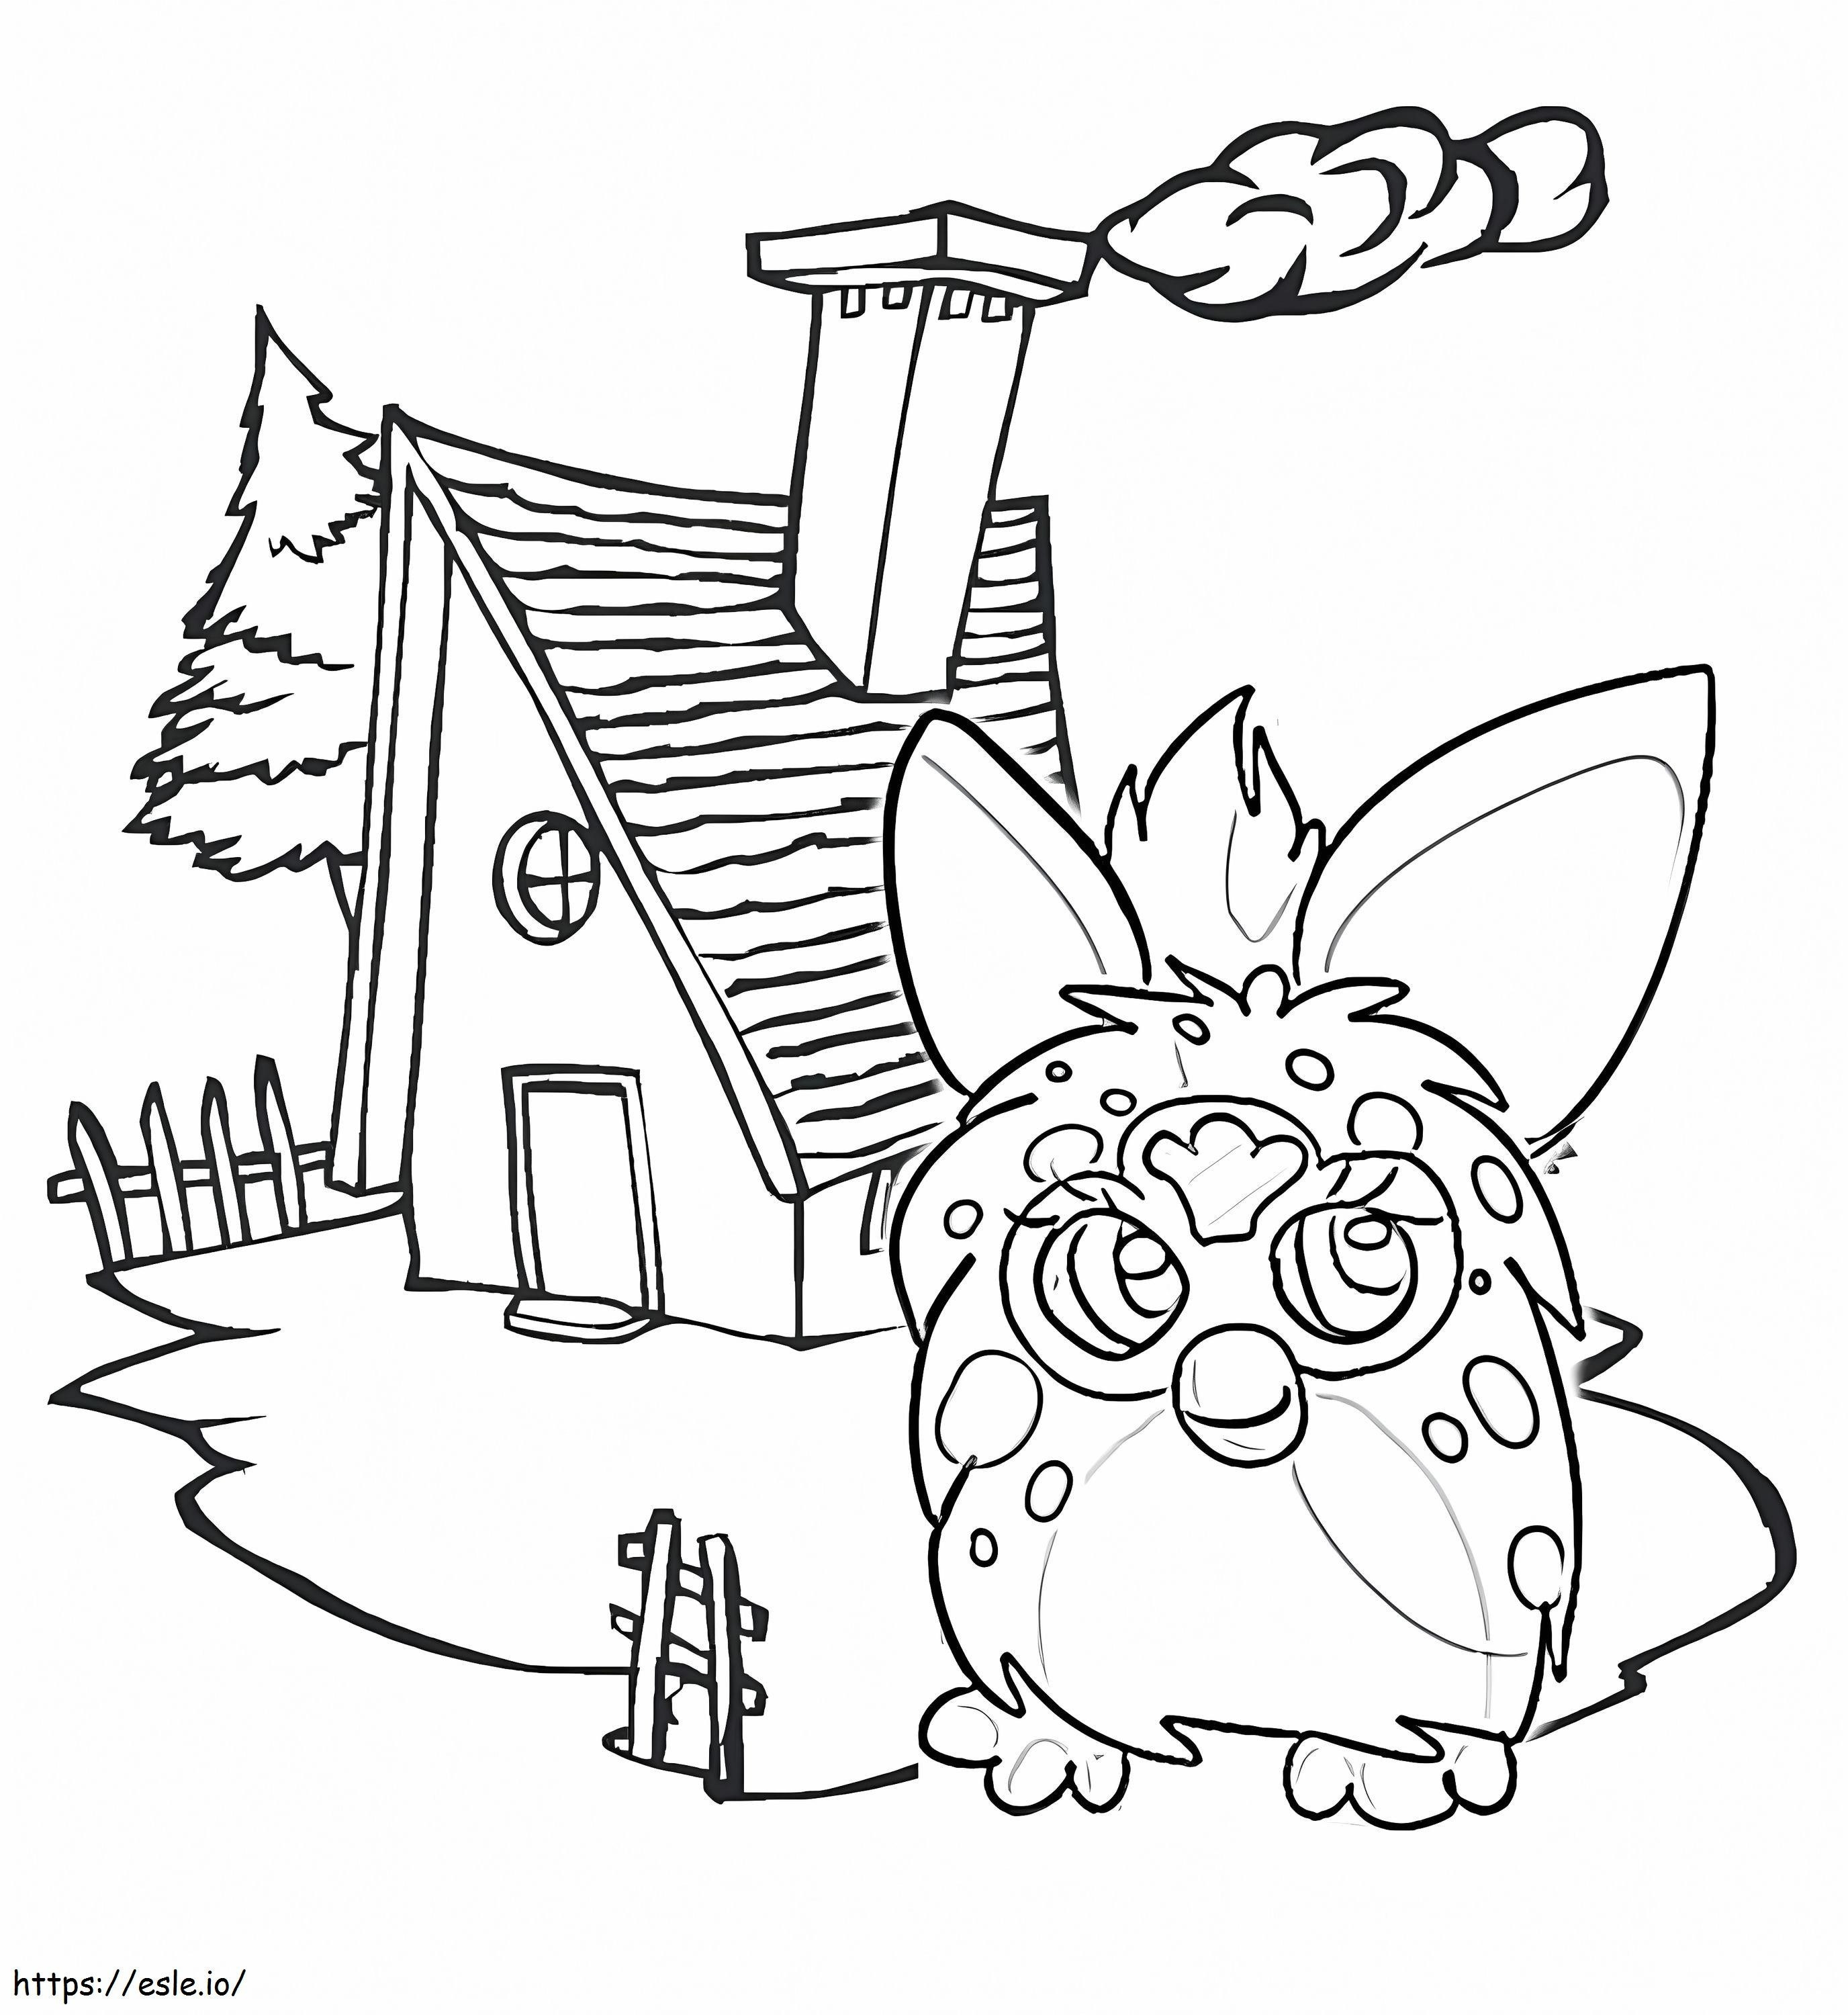 Coloriage Furby et la maison à imprimer dessin